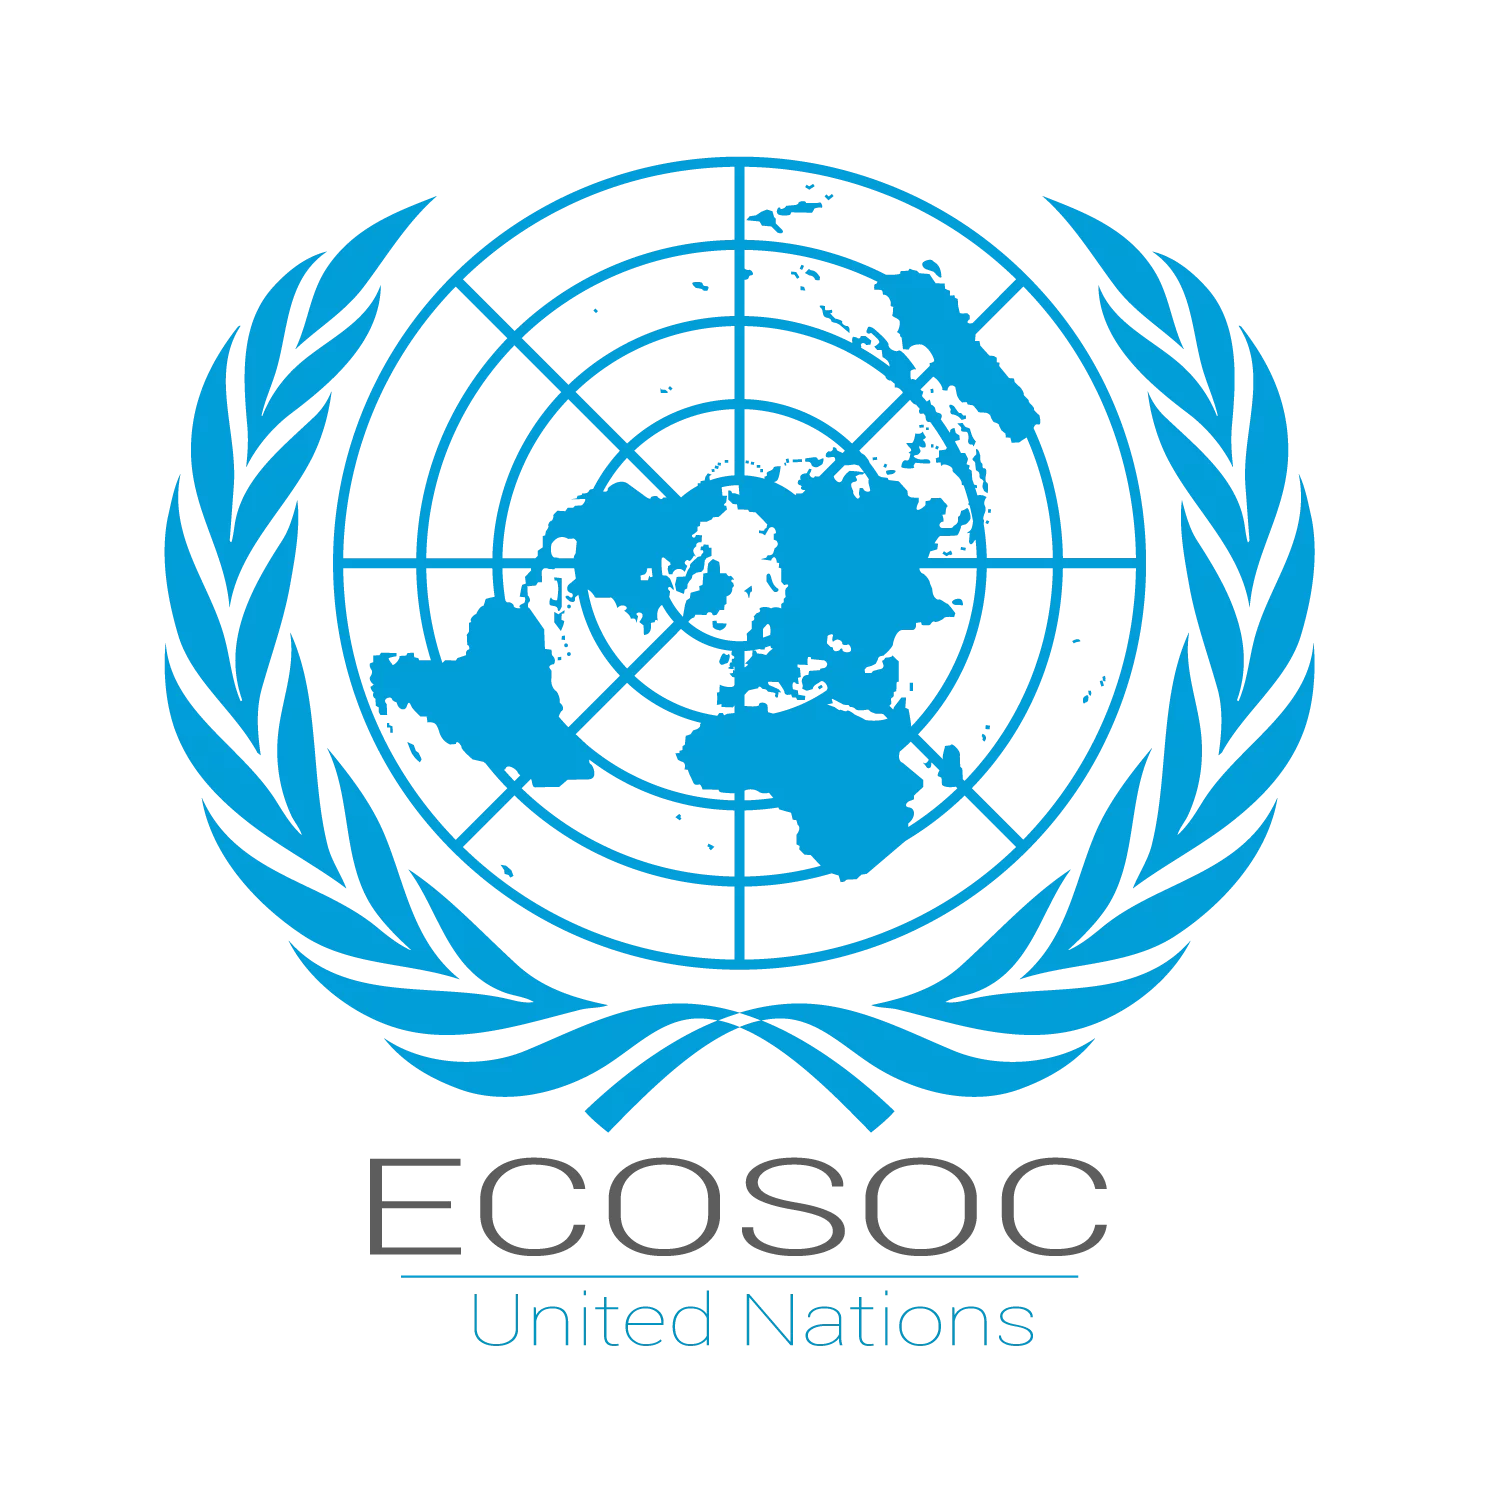 Postulez pour participer au Forum des jeunes du Conseil économique et social des Nations Unies (ECOSOC) 2021